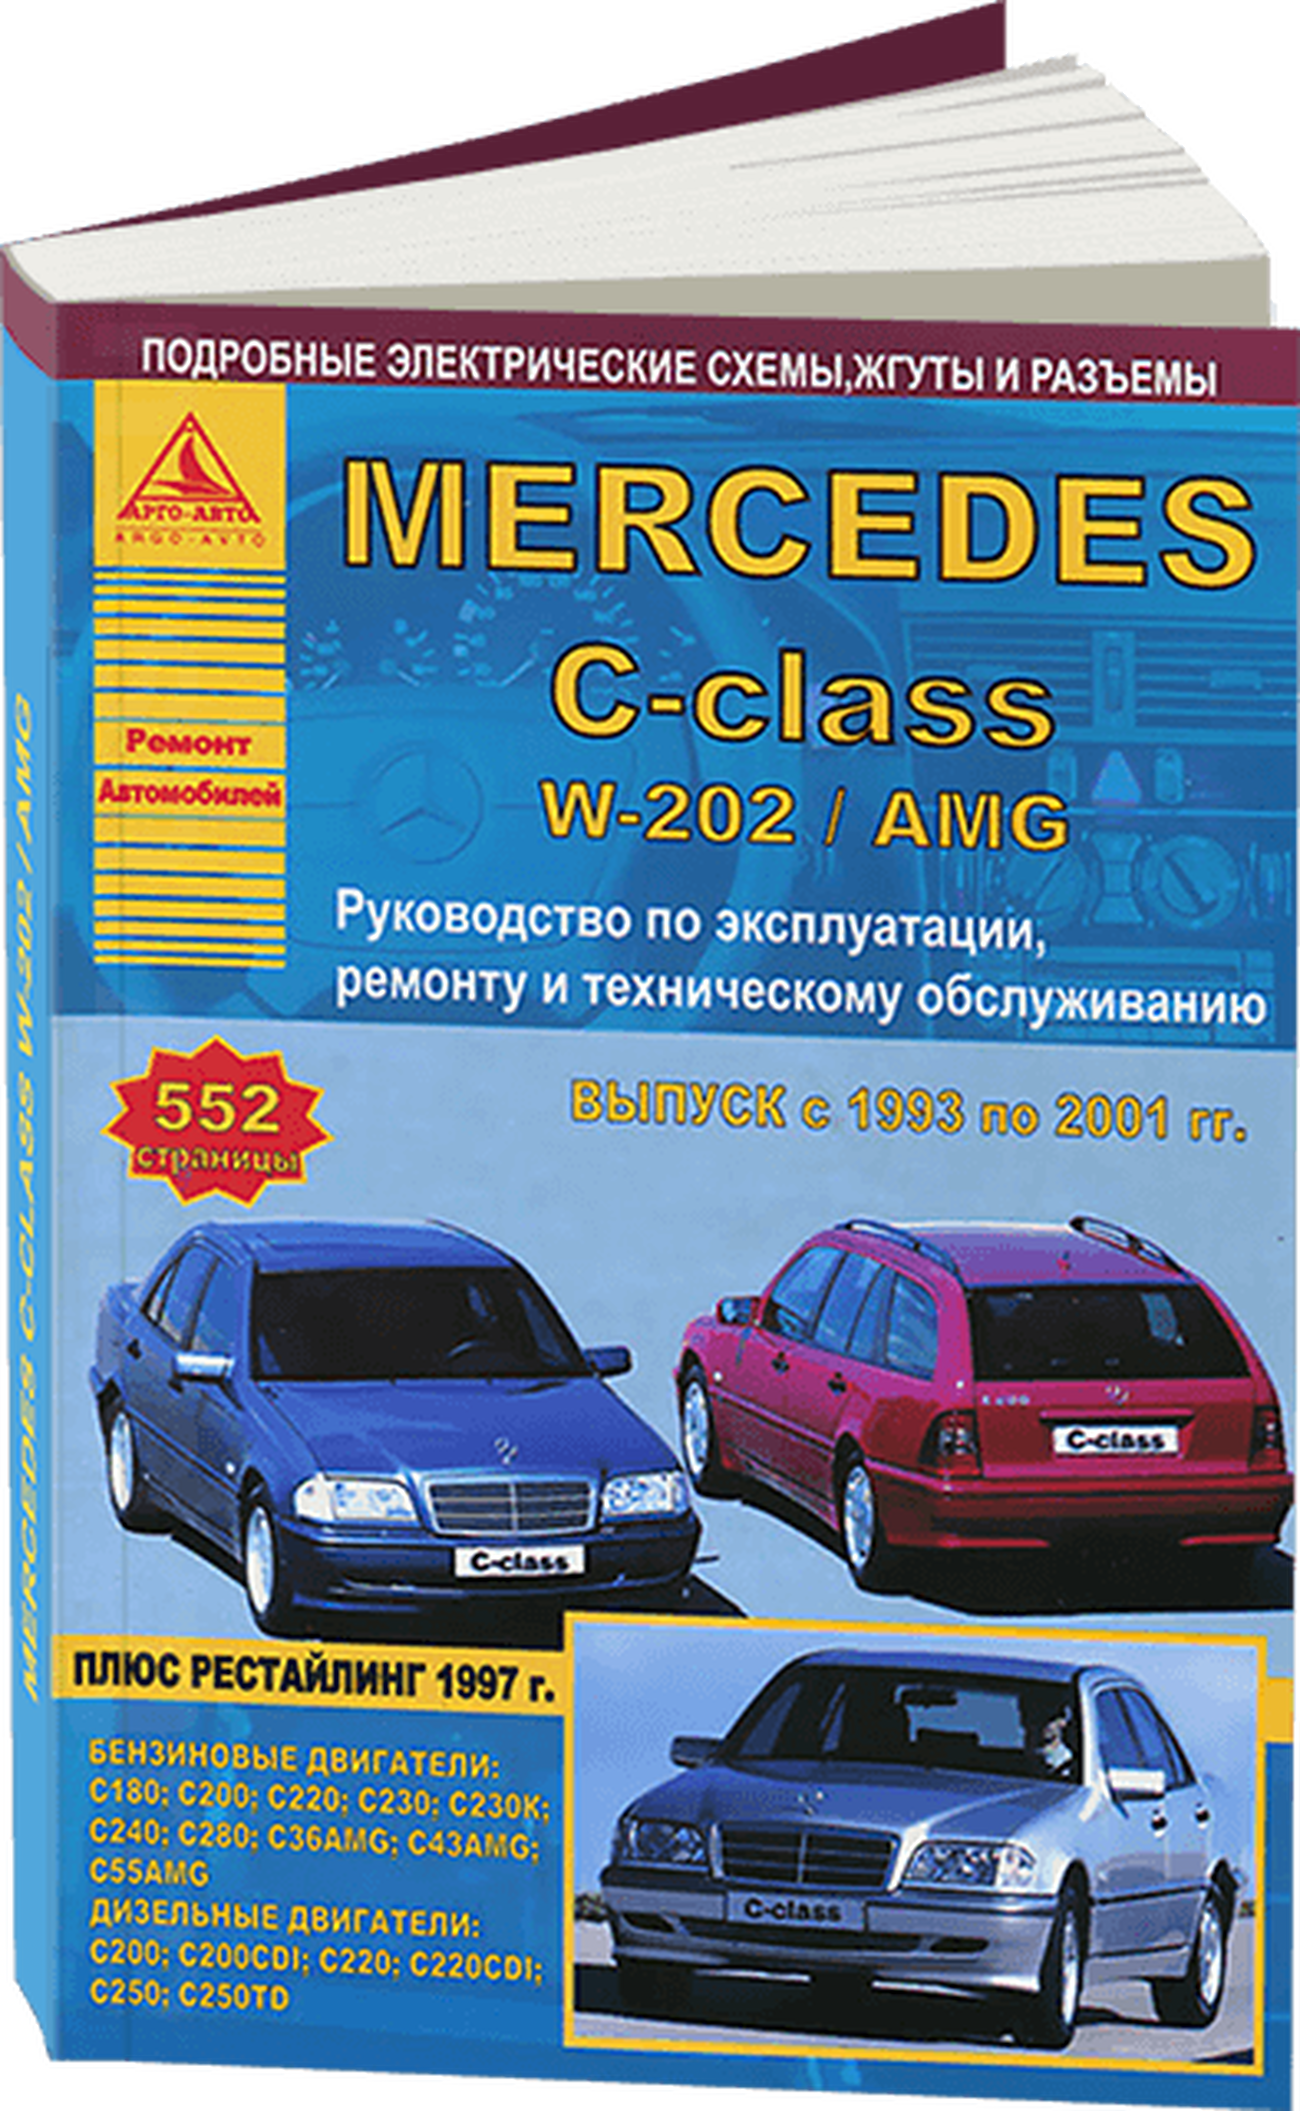 Книга: MERCEDES-BENZ C класс (W-202 / AMG) (б , д) 1993-2001 г.в., рем., экспл., то | Арго-Авто